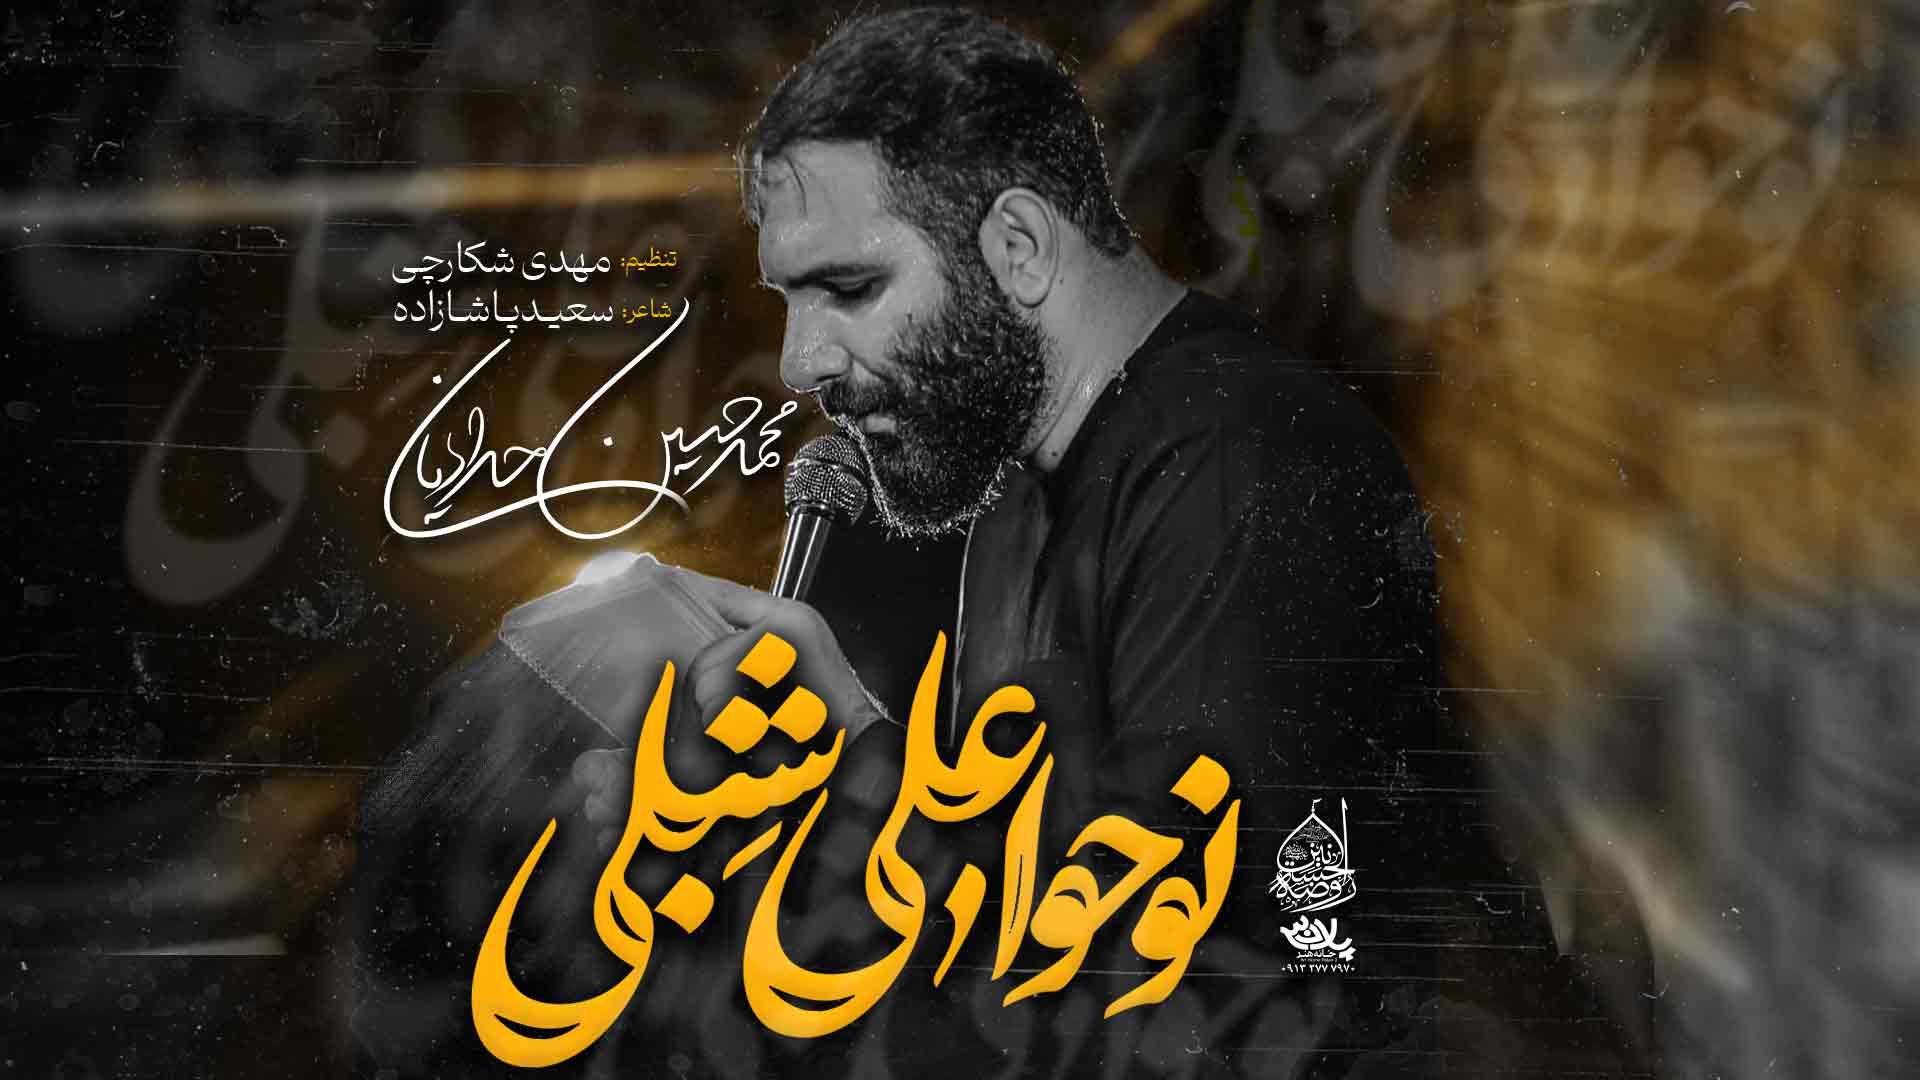 نماهنگ نوحوا علی شبلی محمدحسین حدادیان